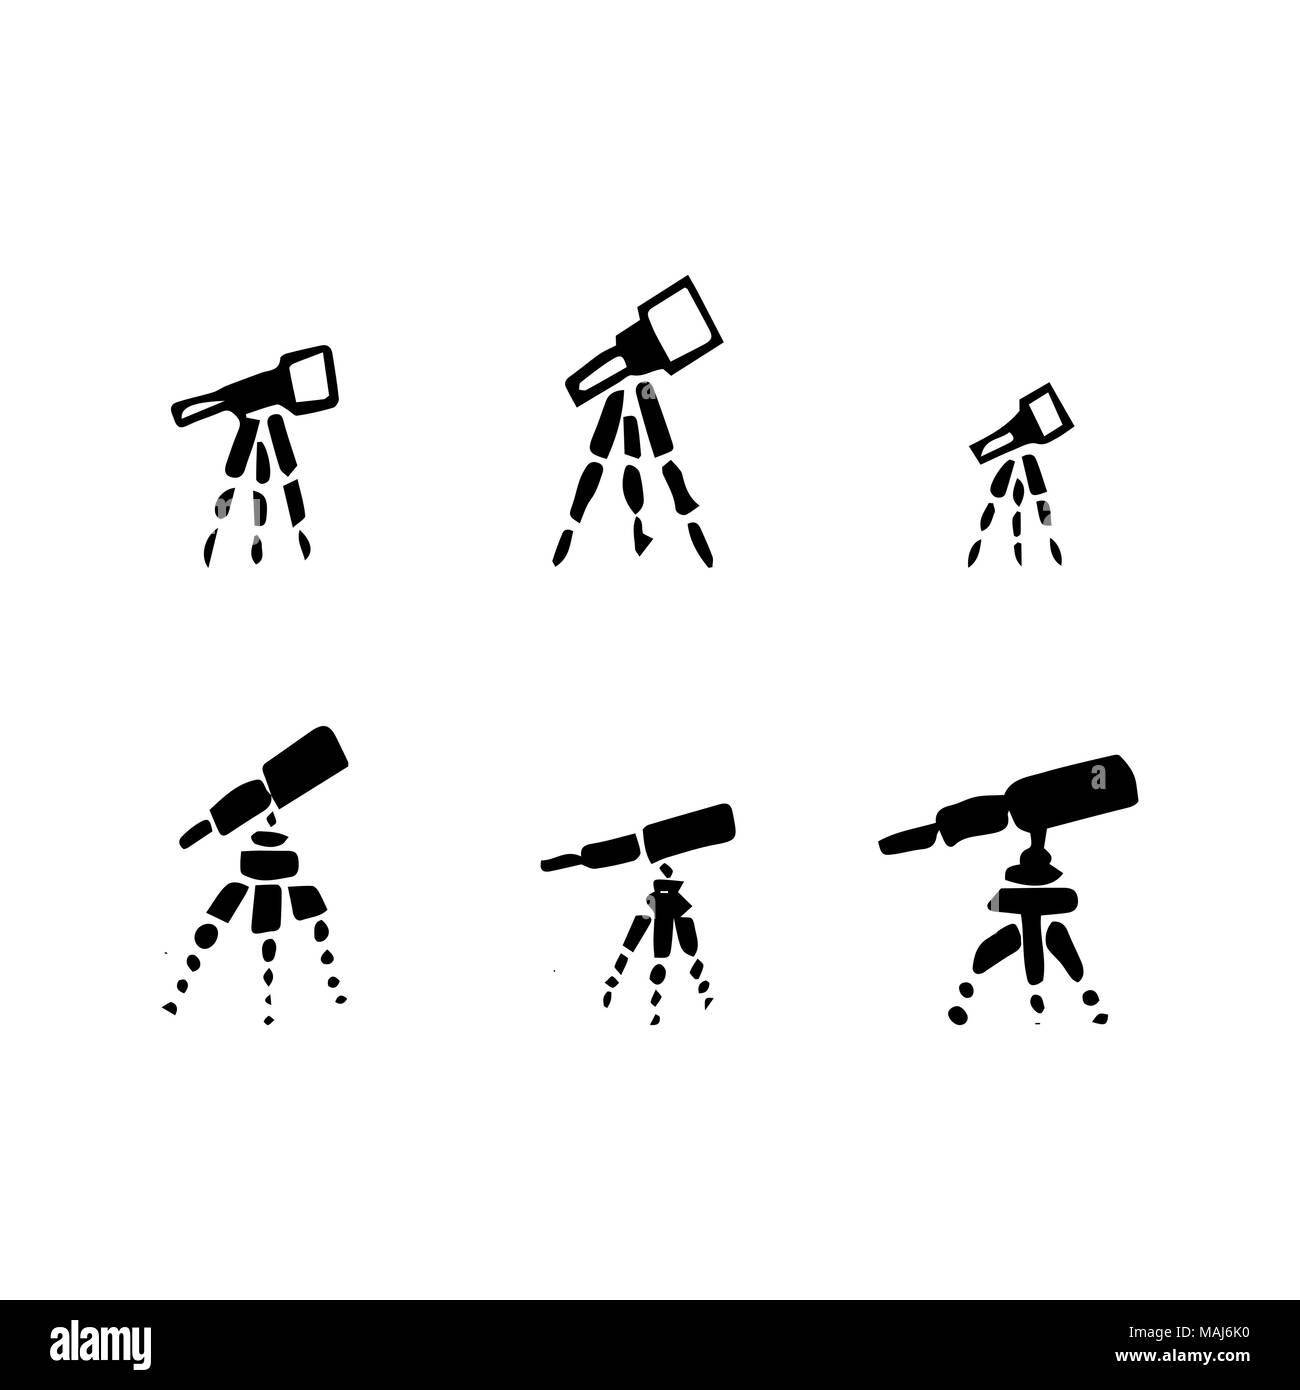 Vektor einrichten von Hand zeichnen Teleskop. Skizze Teleskop  Stock-Vektorgrafik - Alamy